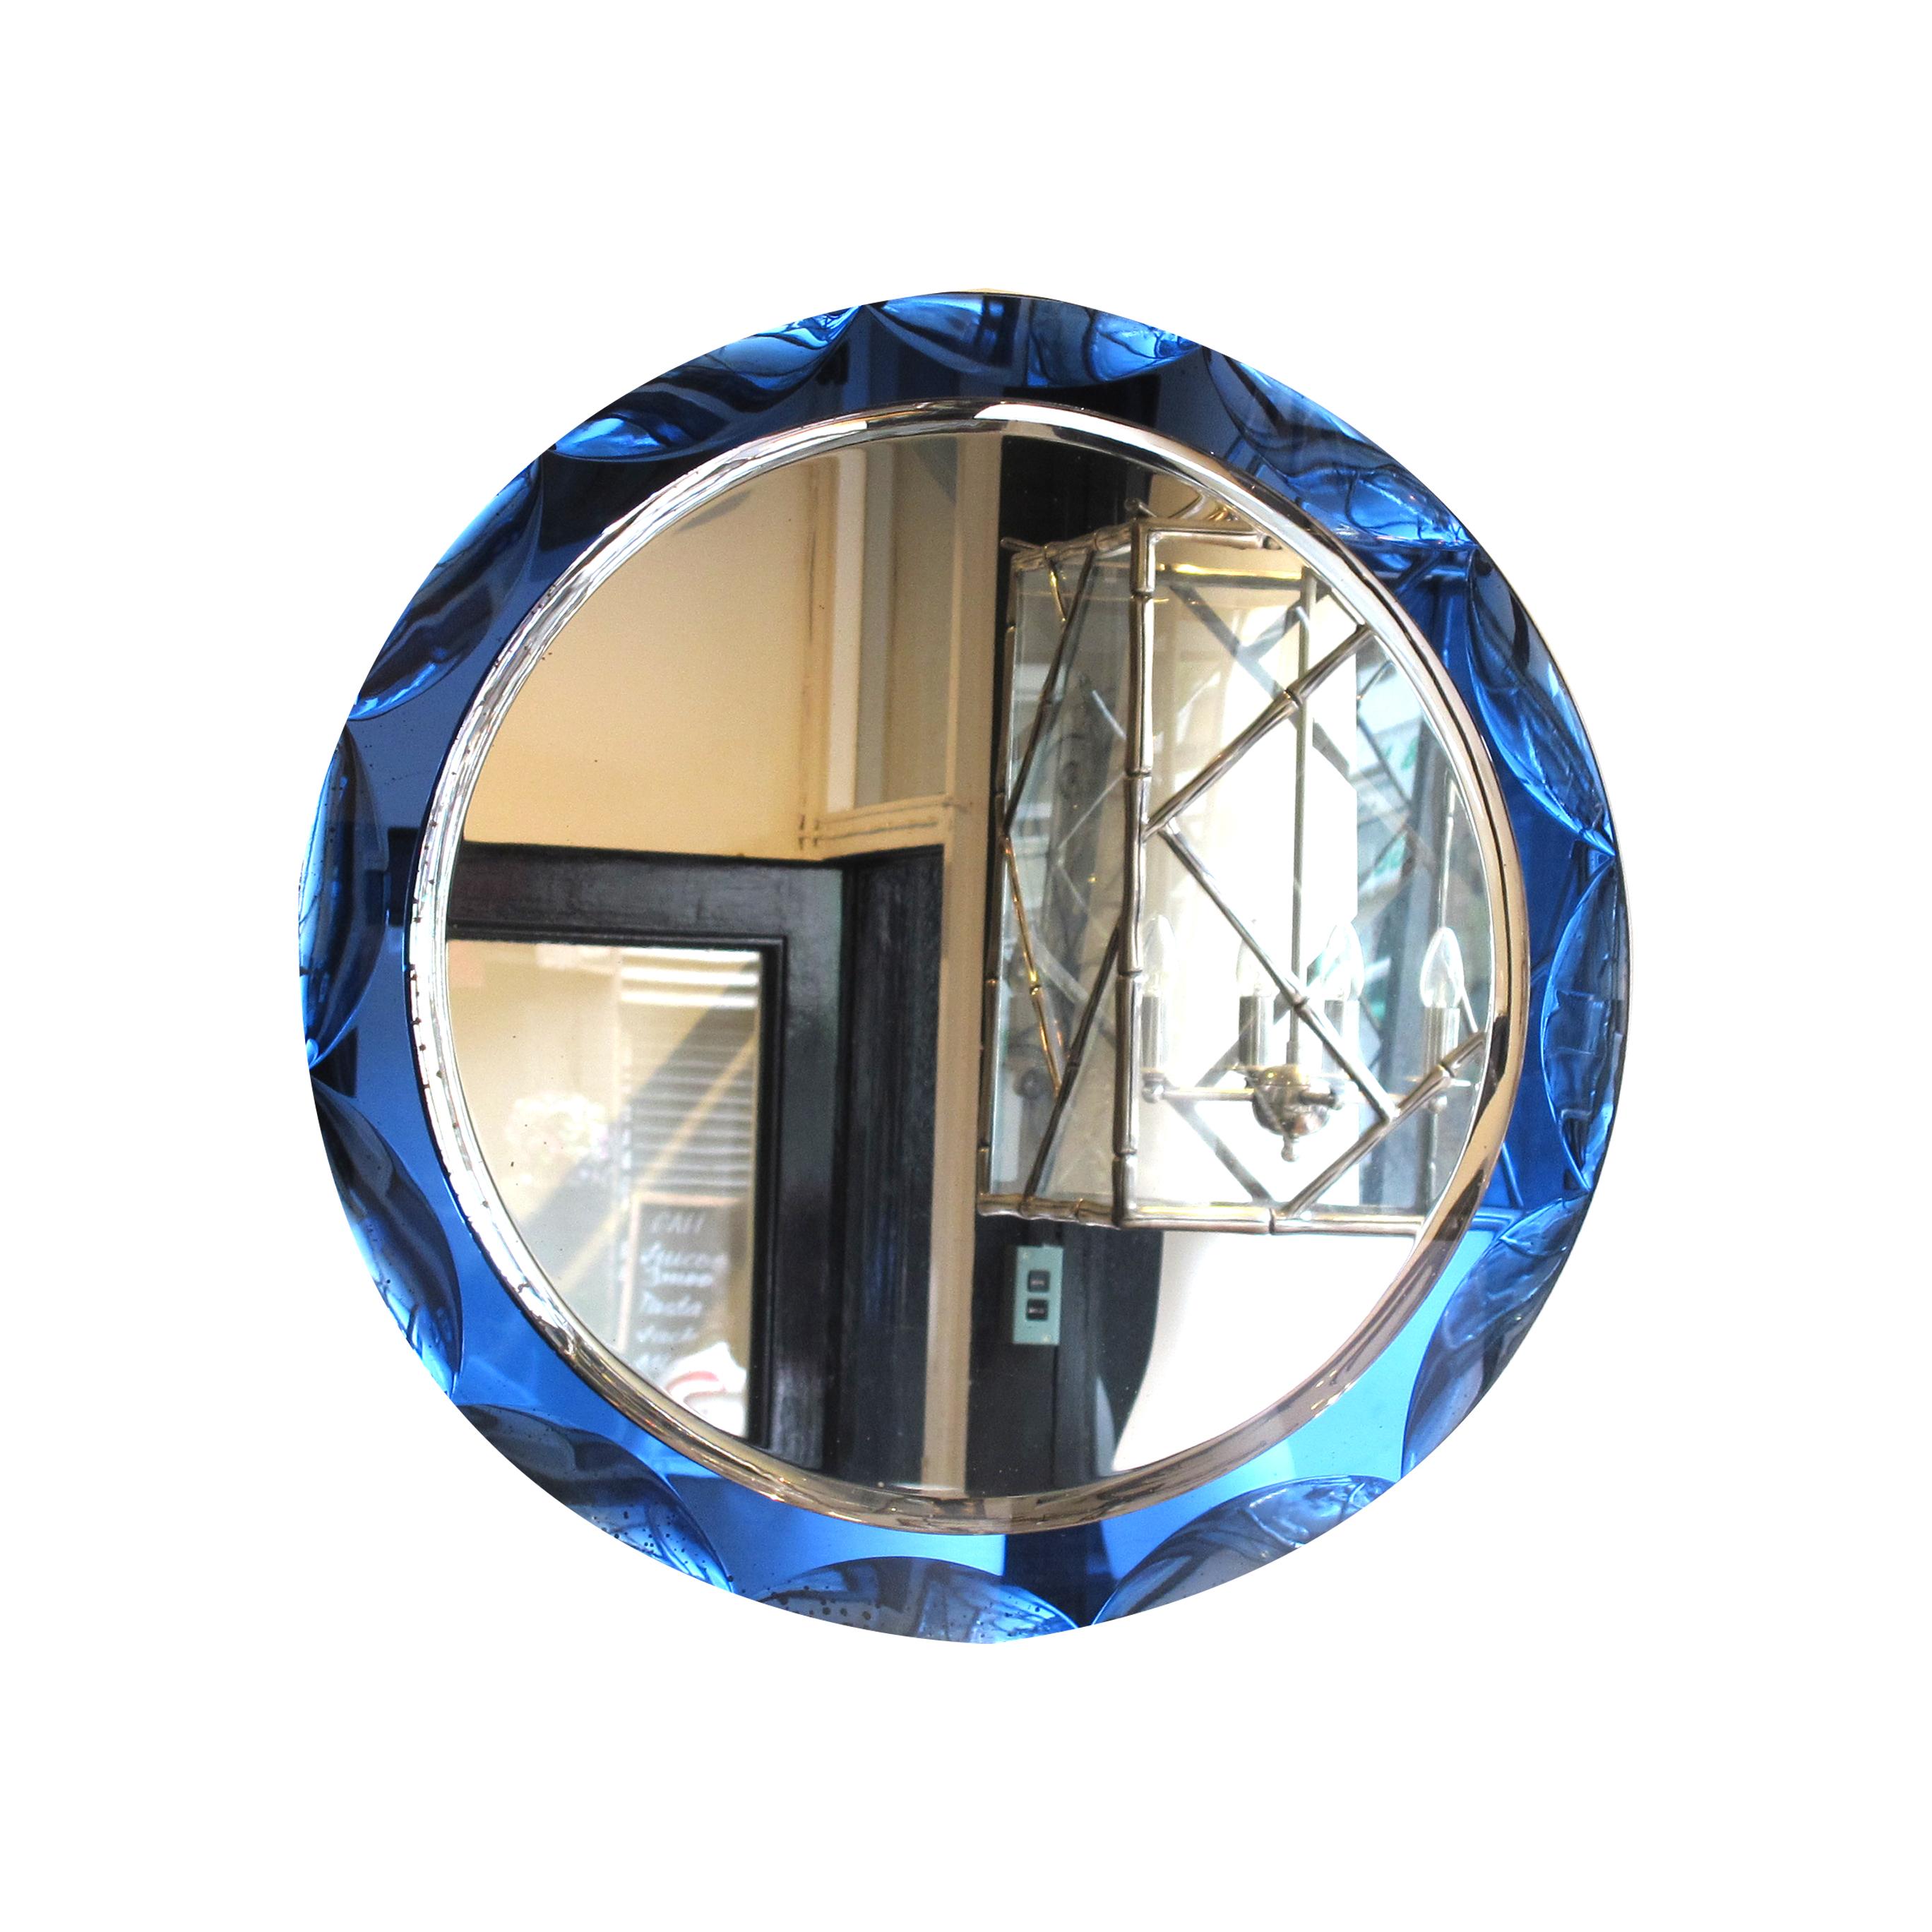 Wunderschöner runder Spiegel aus den 1960er Jahren mit Halbkreisen und einem tiefblauen Spiegelrahmen. Der Spiegel hat eine runde Form mit einer großen, abgeschrägten Kante, die ihm ein dreidimensionales Aussehen verleiht. Der äußere Rahmen besteht